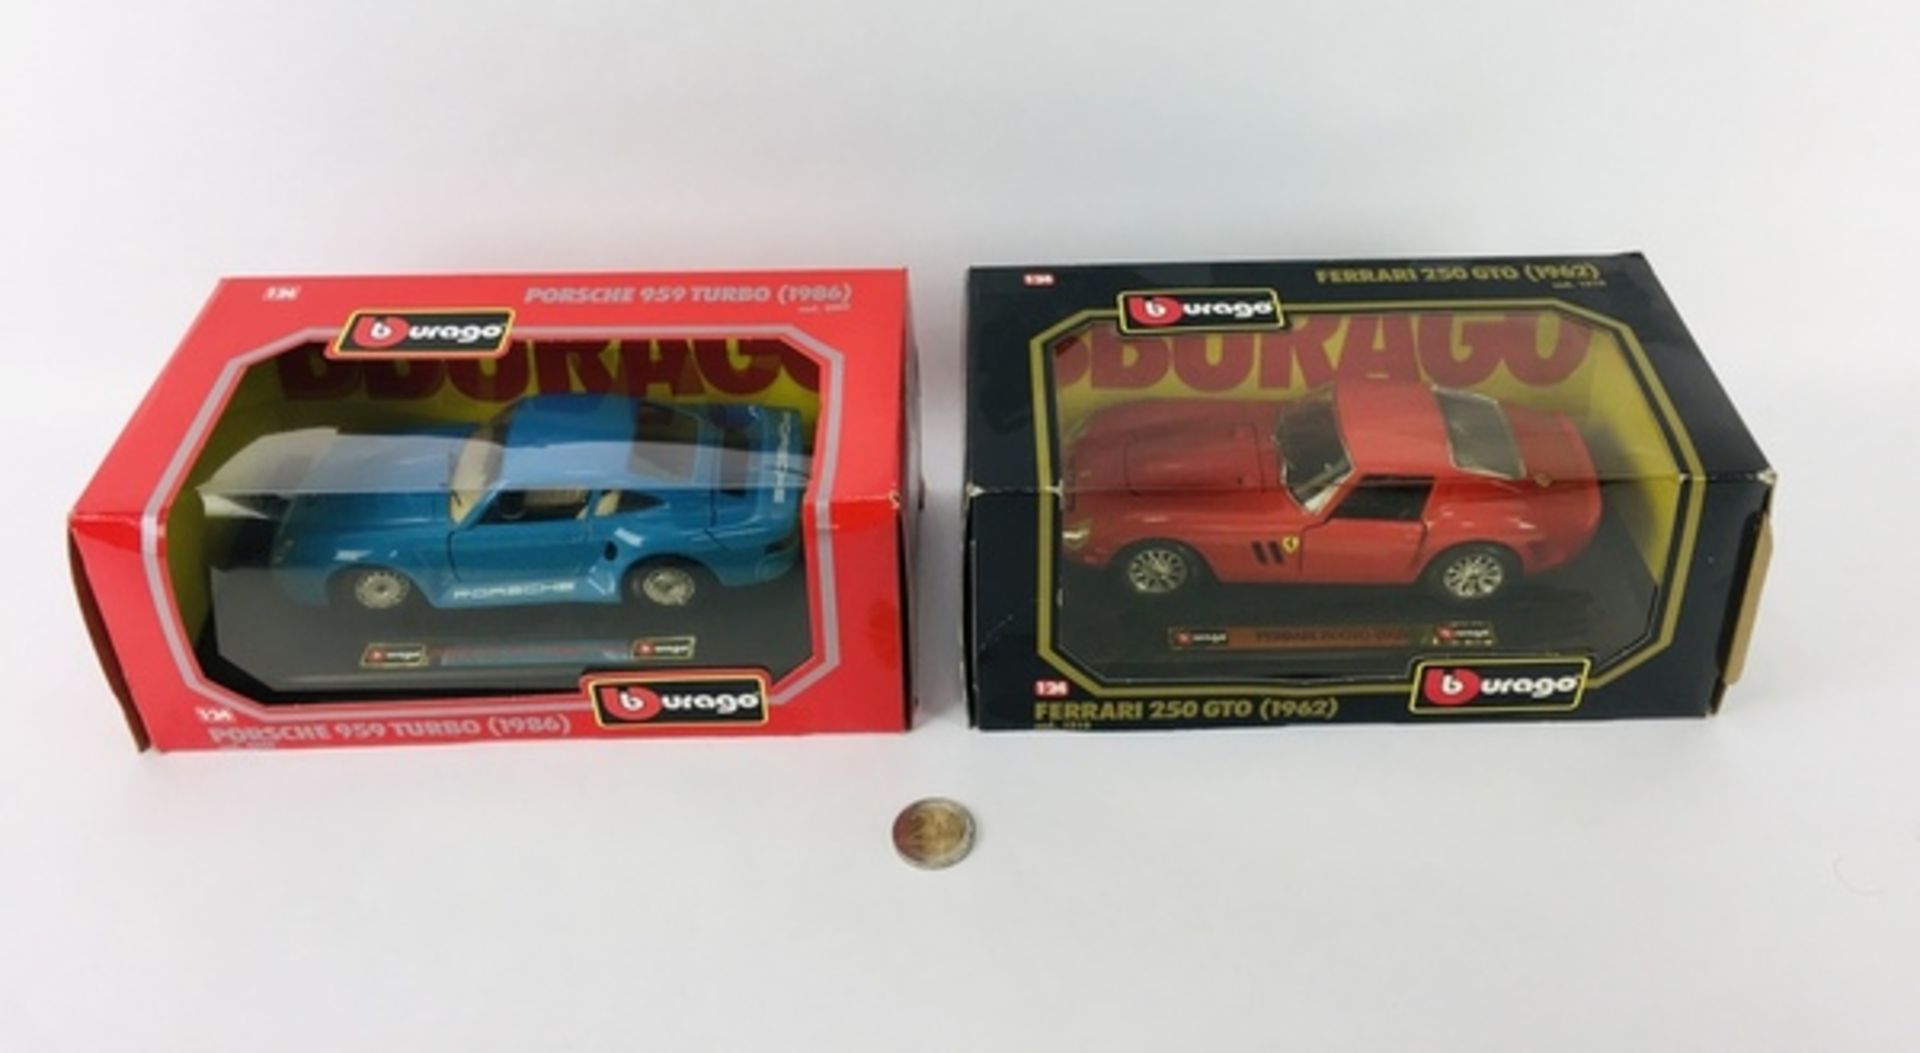 (Speelgoed) Porsche 959 Turbo 1986 en Ferrari 250 GTO 1962Burago Porsche 959 Turbo 1986 en Ferr - Image 2 of 4